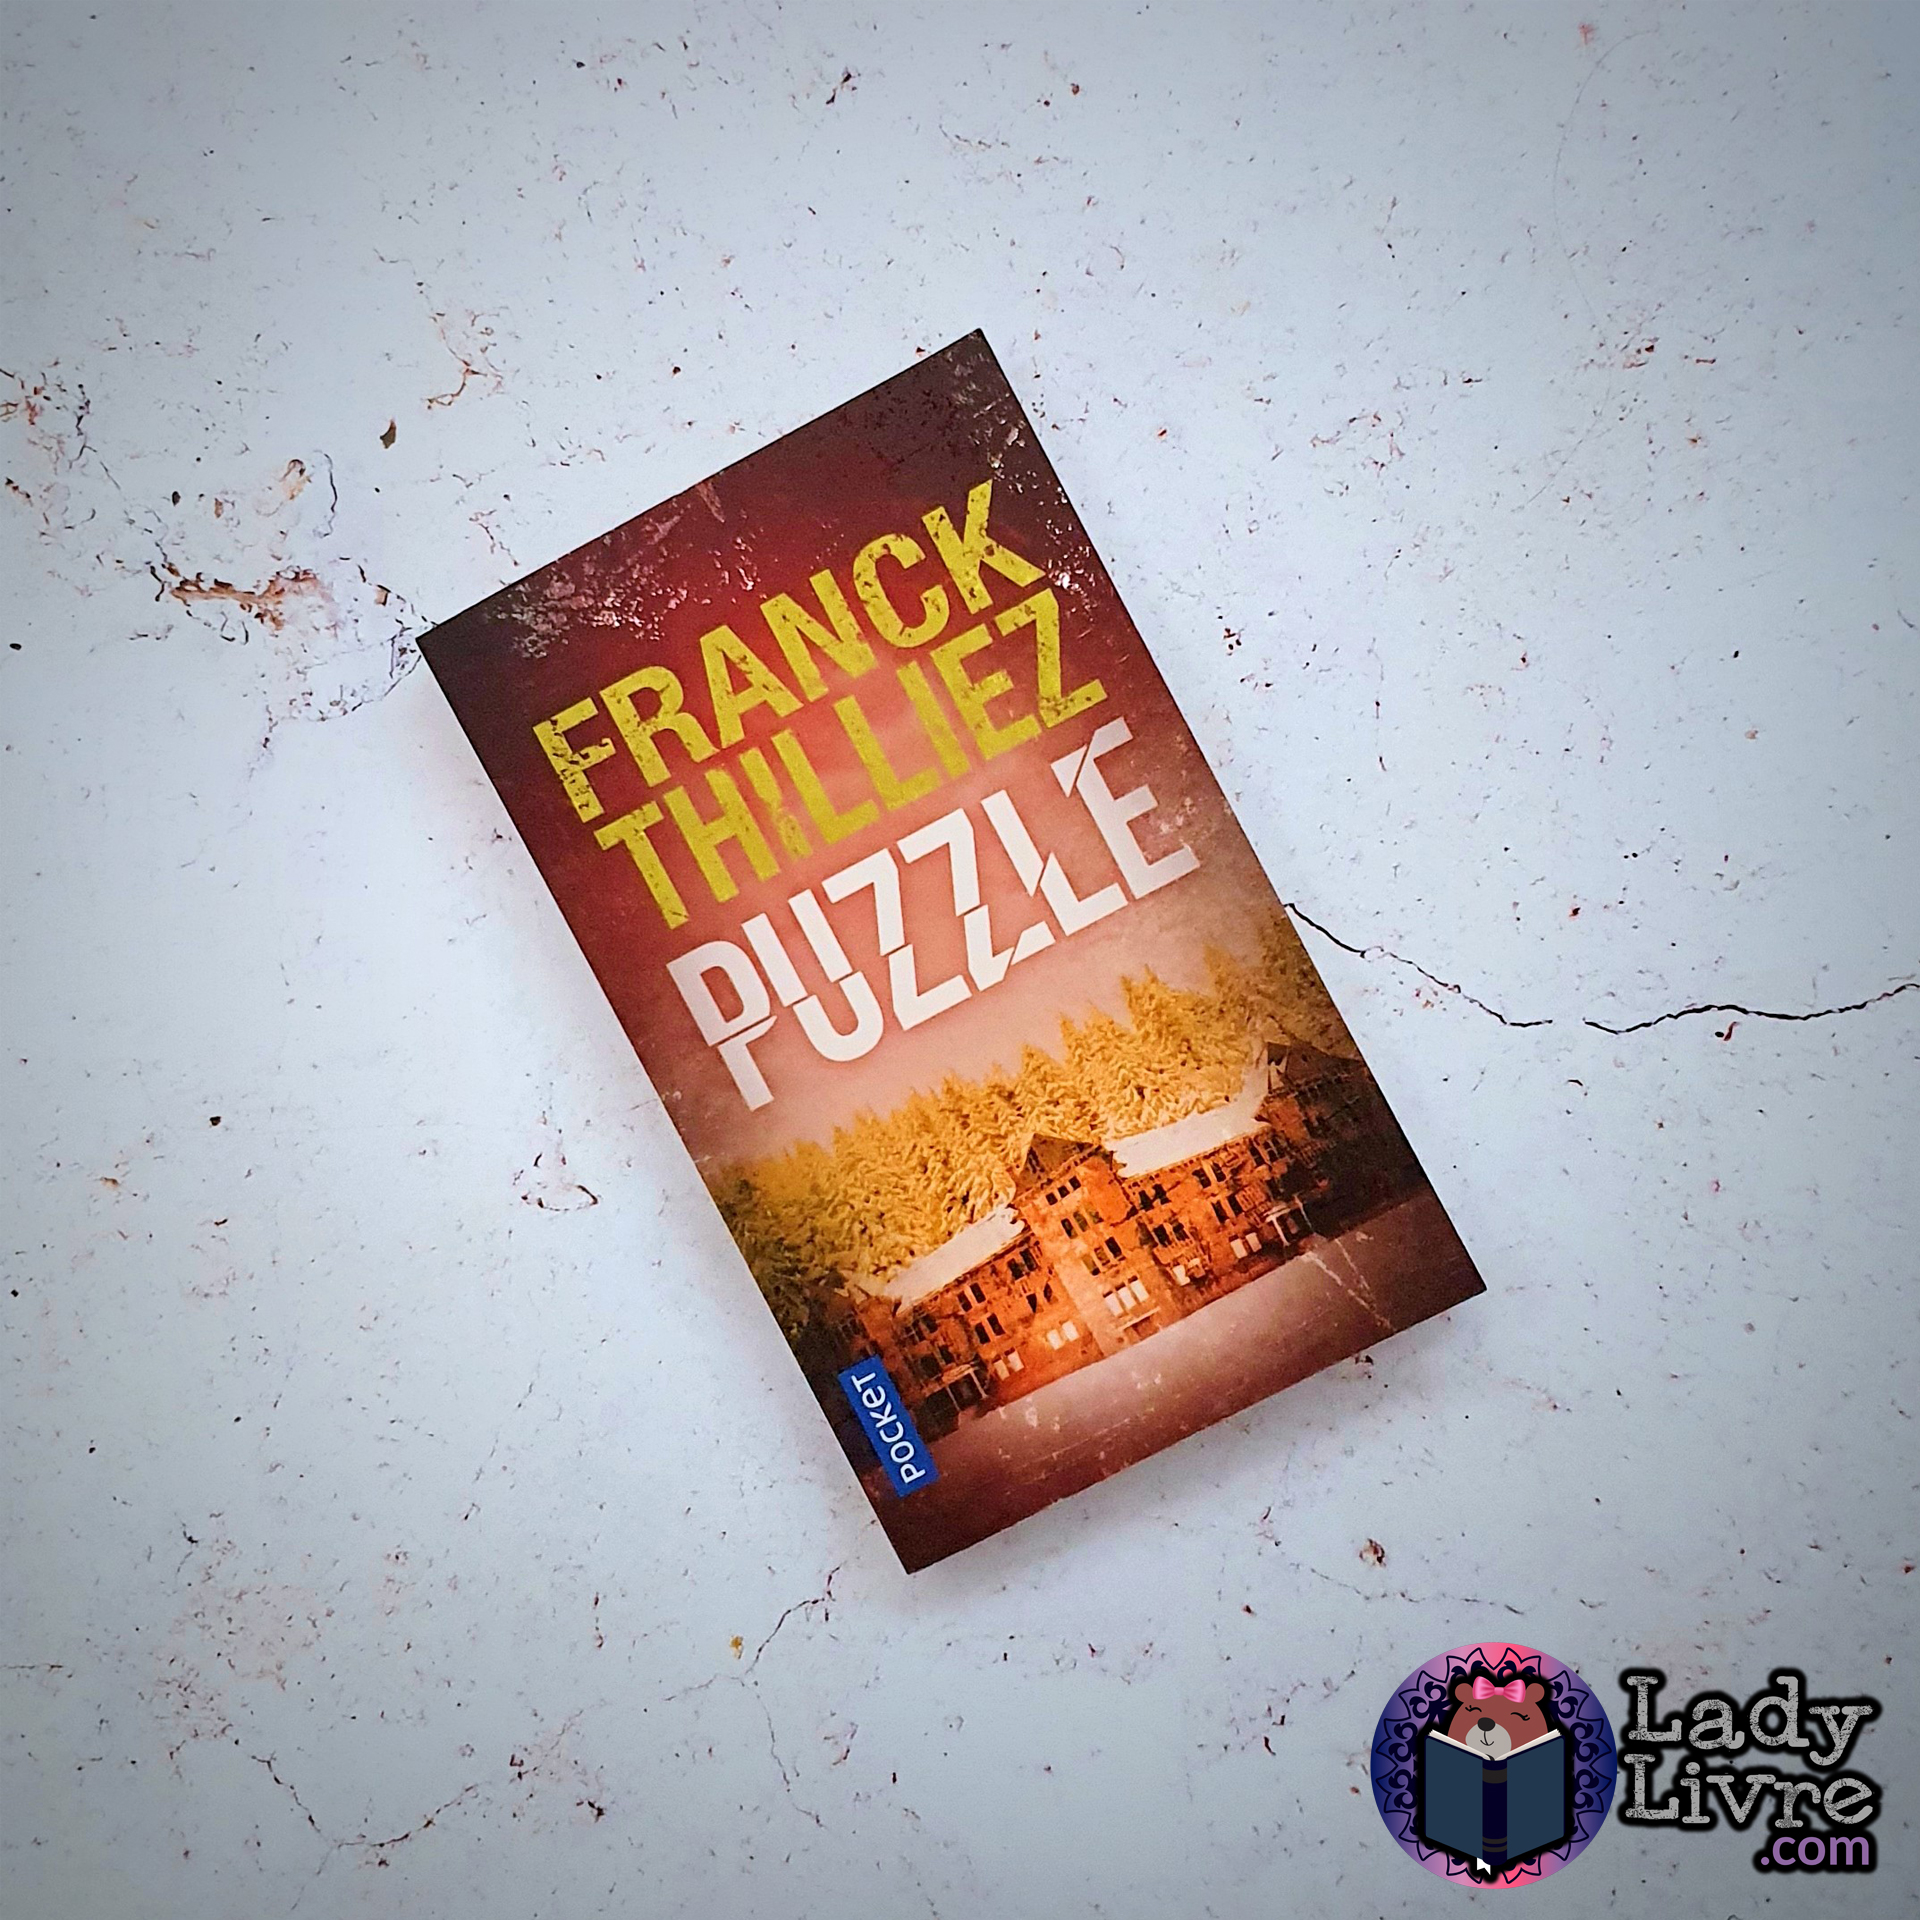 Puzzle - Franck Thilliez